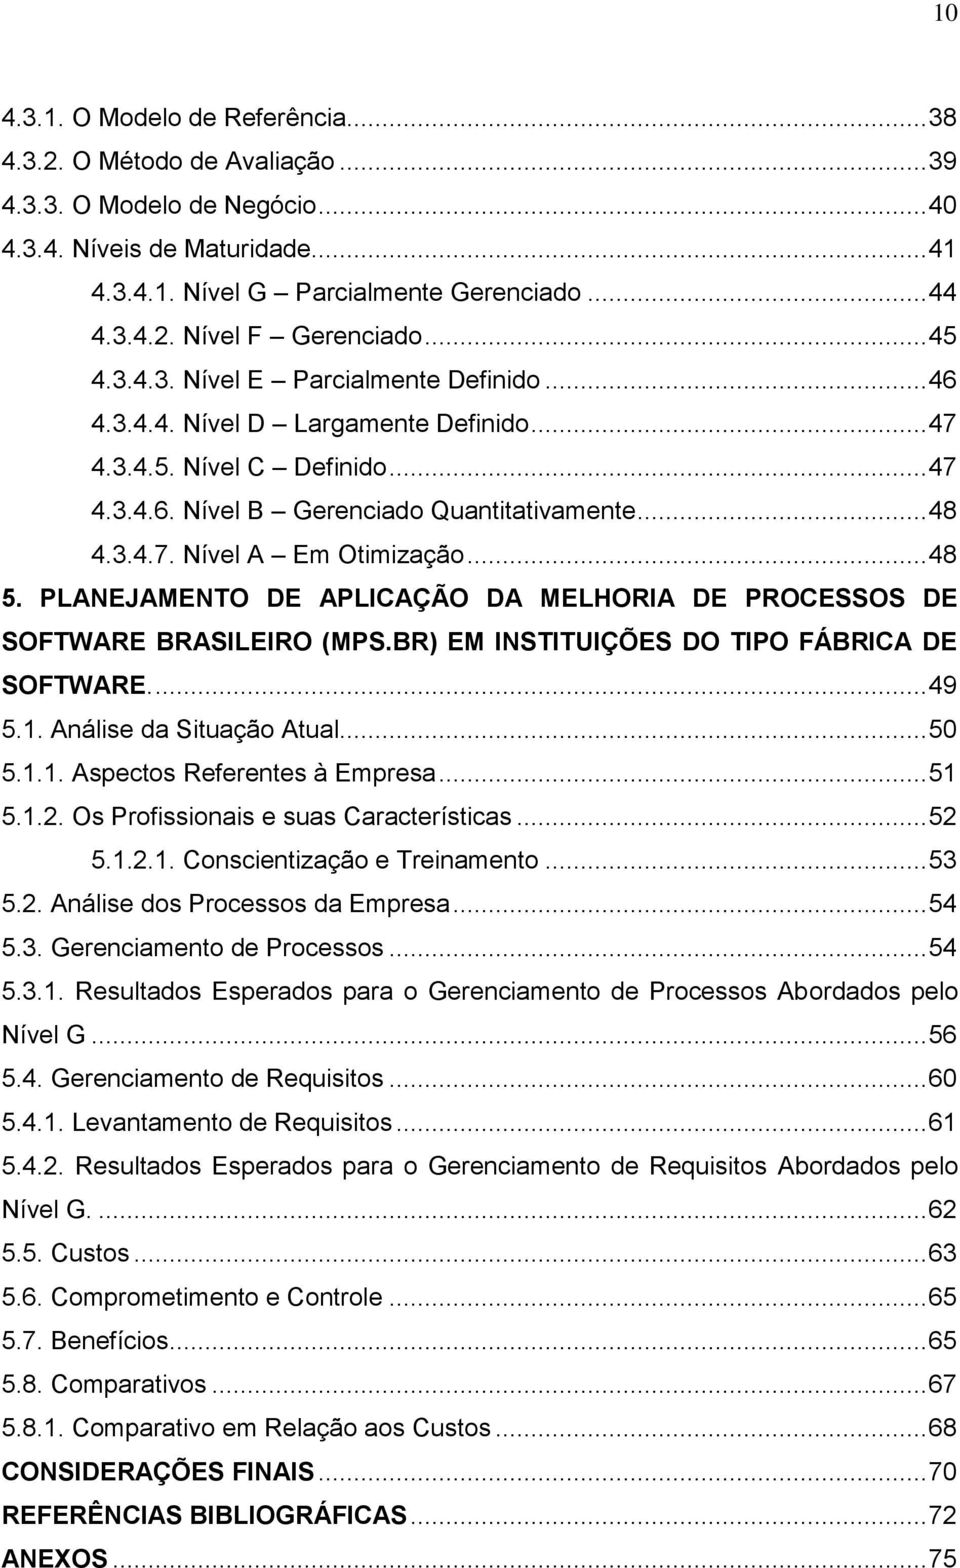 .. 48 5. PLANEJAMENTO DE APLICAÇÃO DA MELHORIA DE PROCESSOS DE SOFTWARE BRASILEIRO (MPS.BR) EM INSTITUIÇÕES DO TIPO FÁBRICA DE SOFTWARE.... 49 5.1. Análise da Situação Atual... 50 5.1.1. Aspectos Referentes à Empresa.